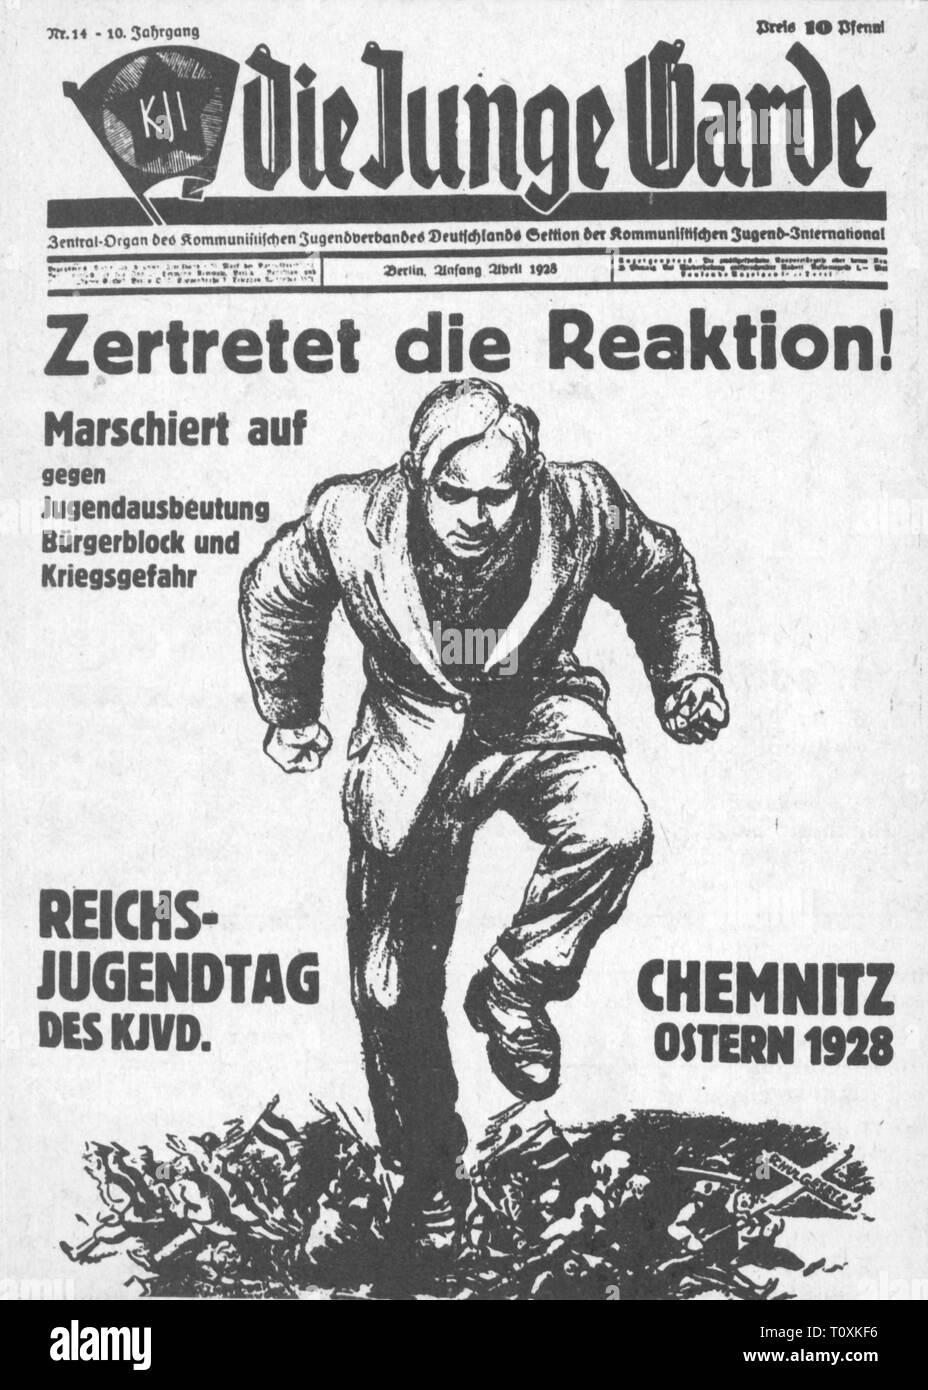 Prensa / medios de comunicación, revistas, 'Die Junge Garde' (la Joven Guardia), Front Page, volumen 10, número 14, Berlín, a comienzos de abril de 1928, el Copyright del artista no ha de ser borrado Foto de stock